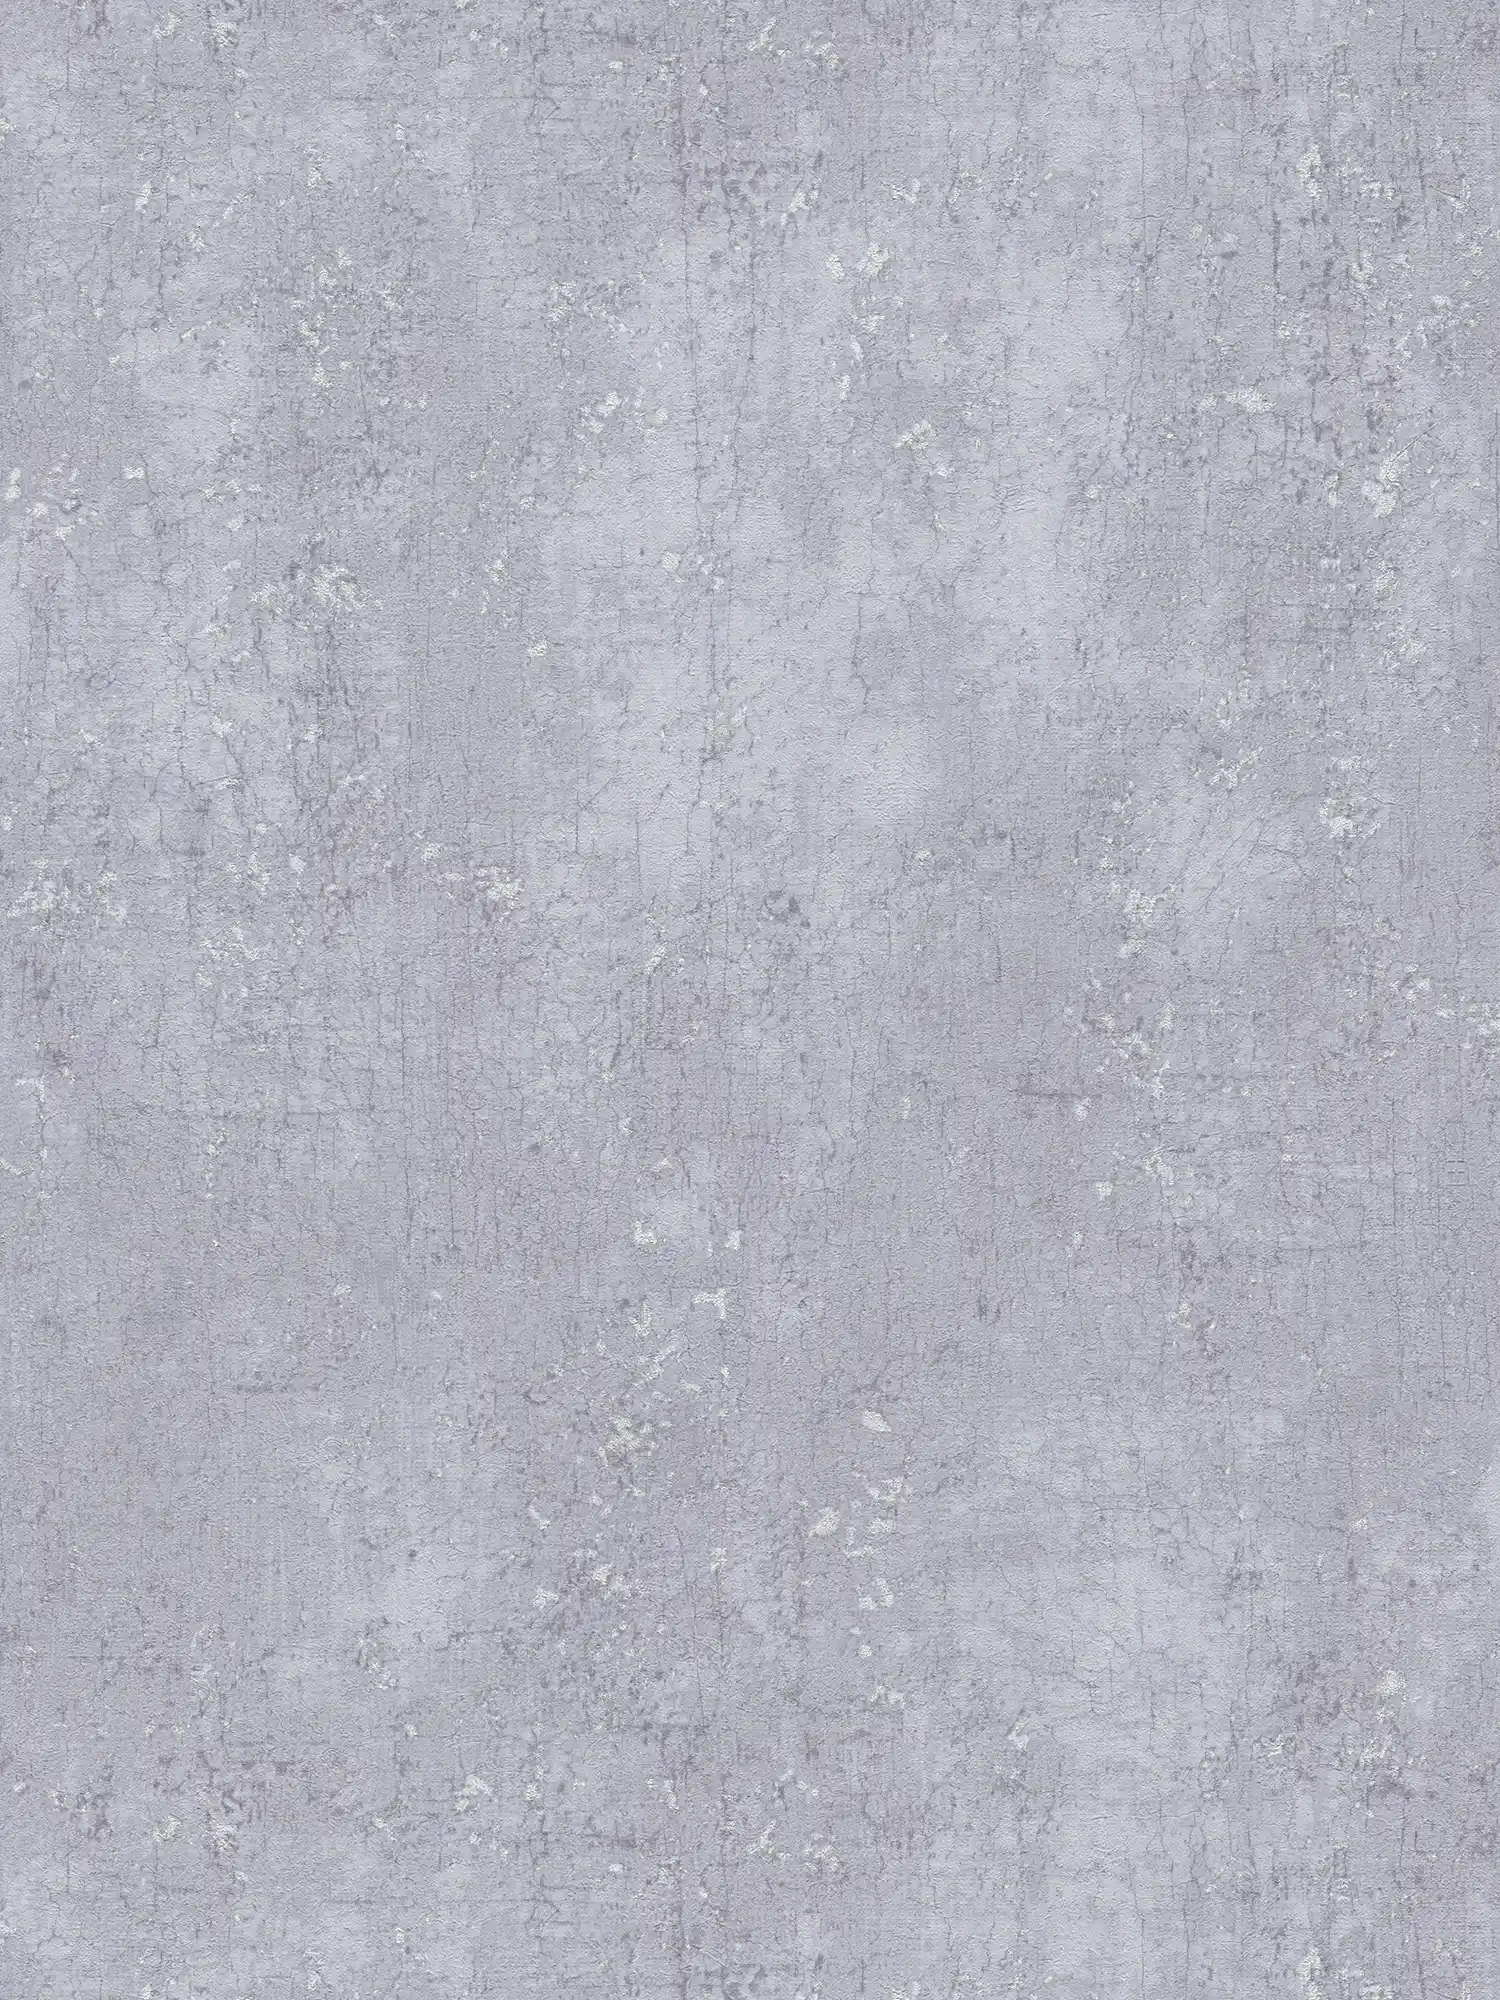 Carta da parati grigia effetto intonaco in look usato - grigio, metallizzato
